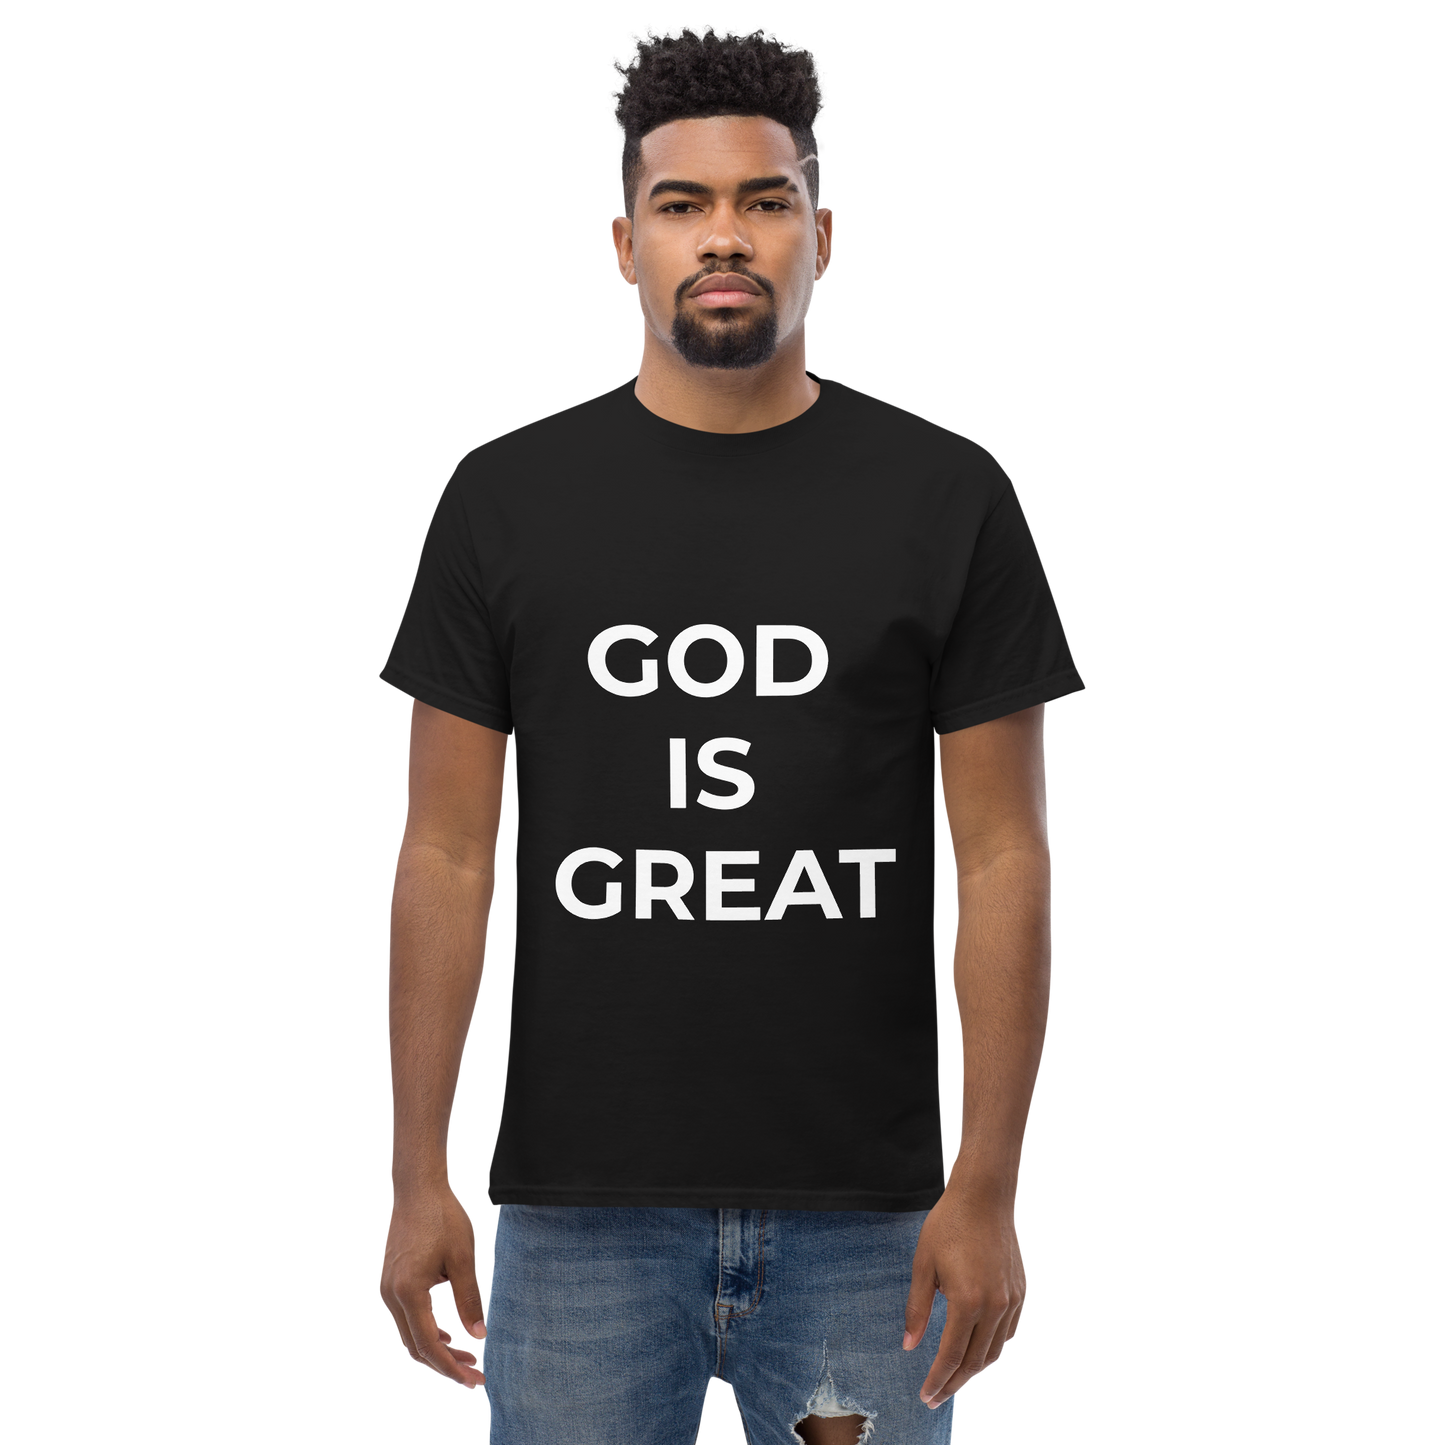 GOD IS GREAT tee